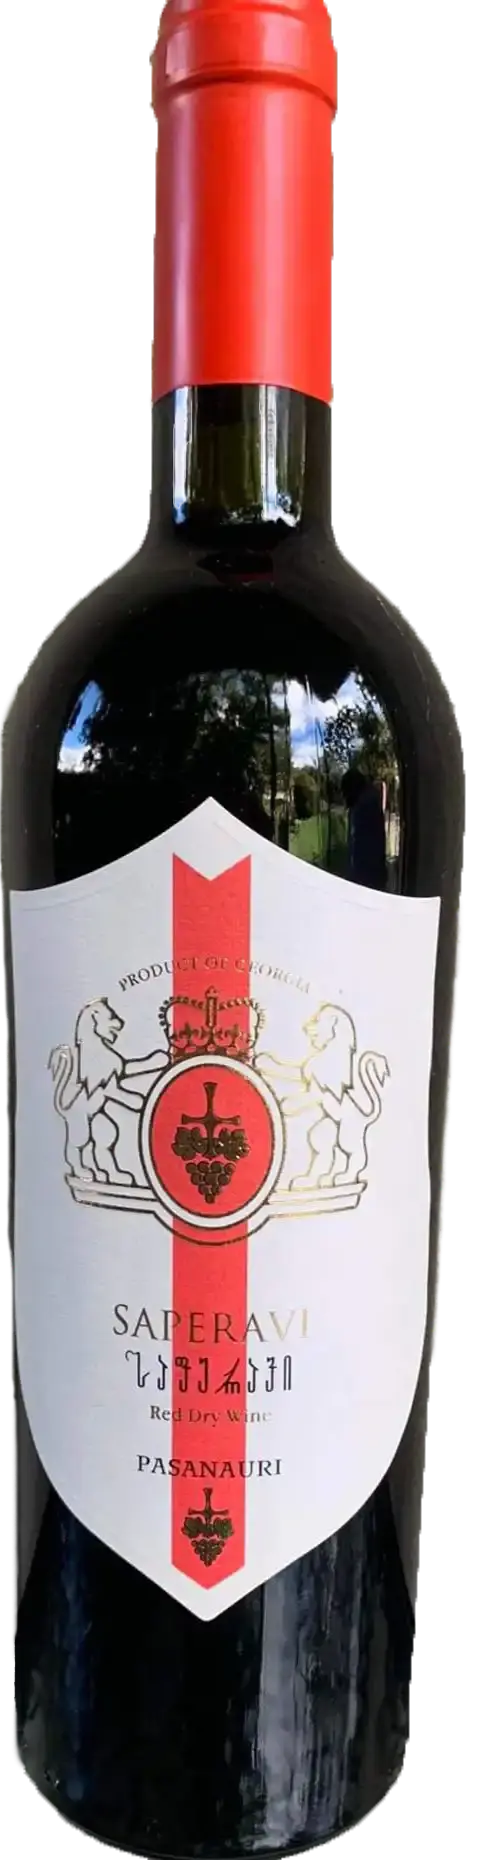 Вино Саперави красное сухое Пасанаури